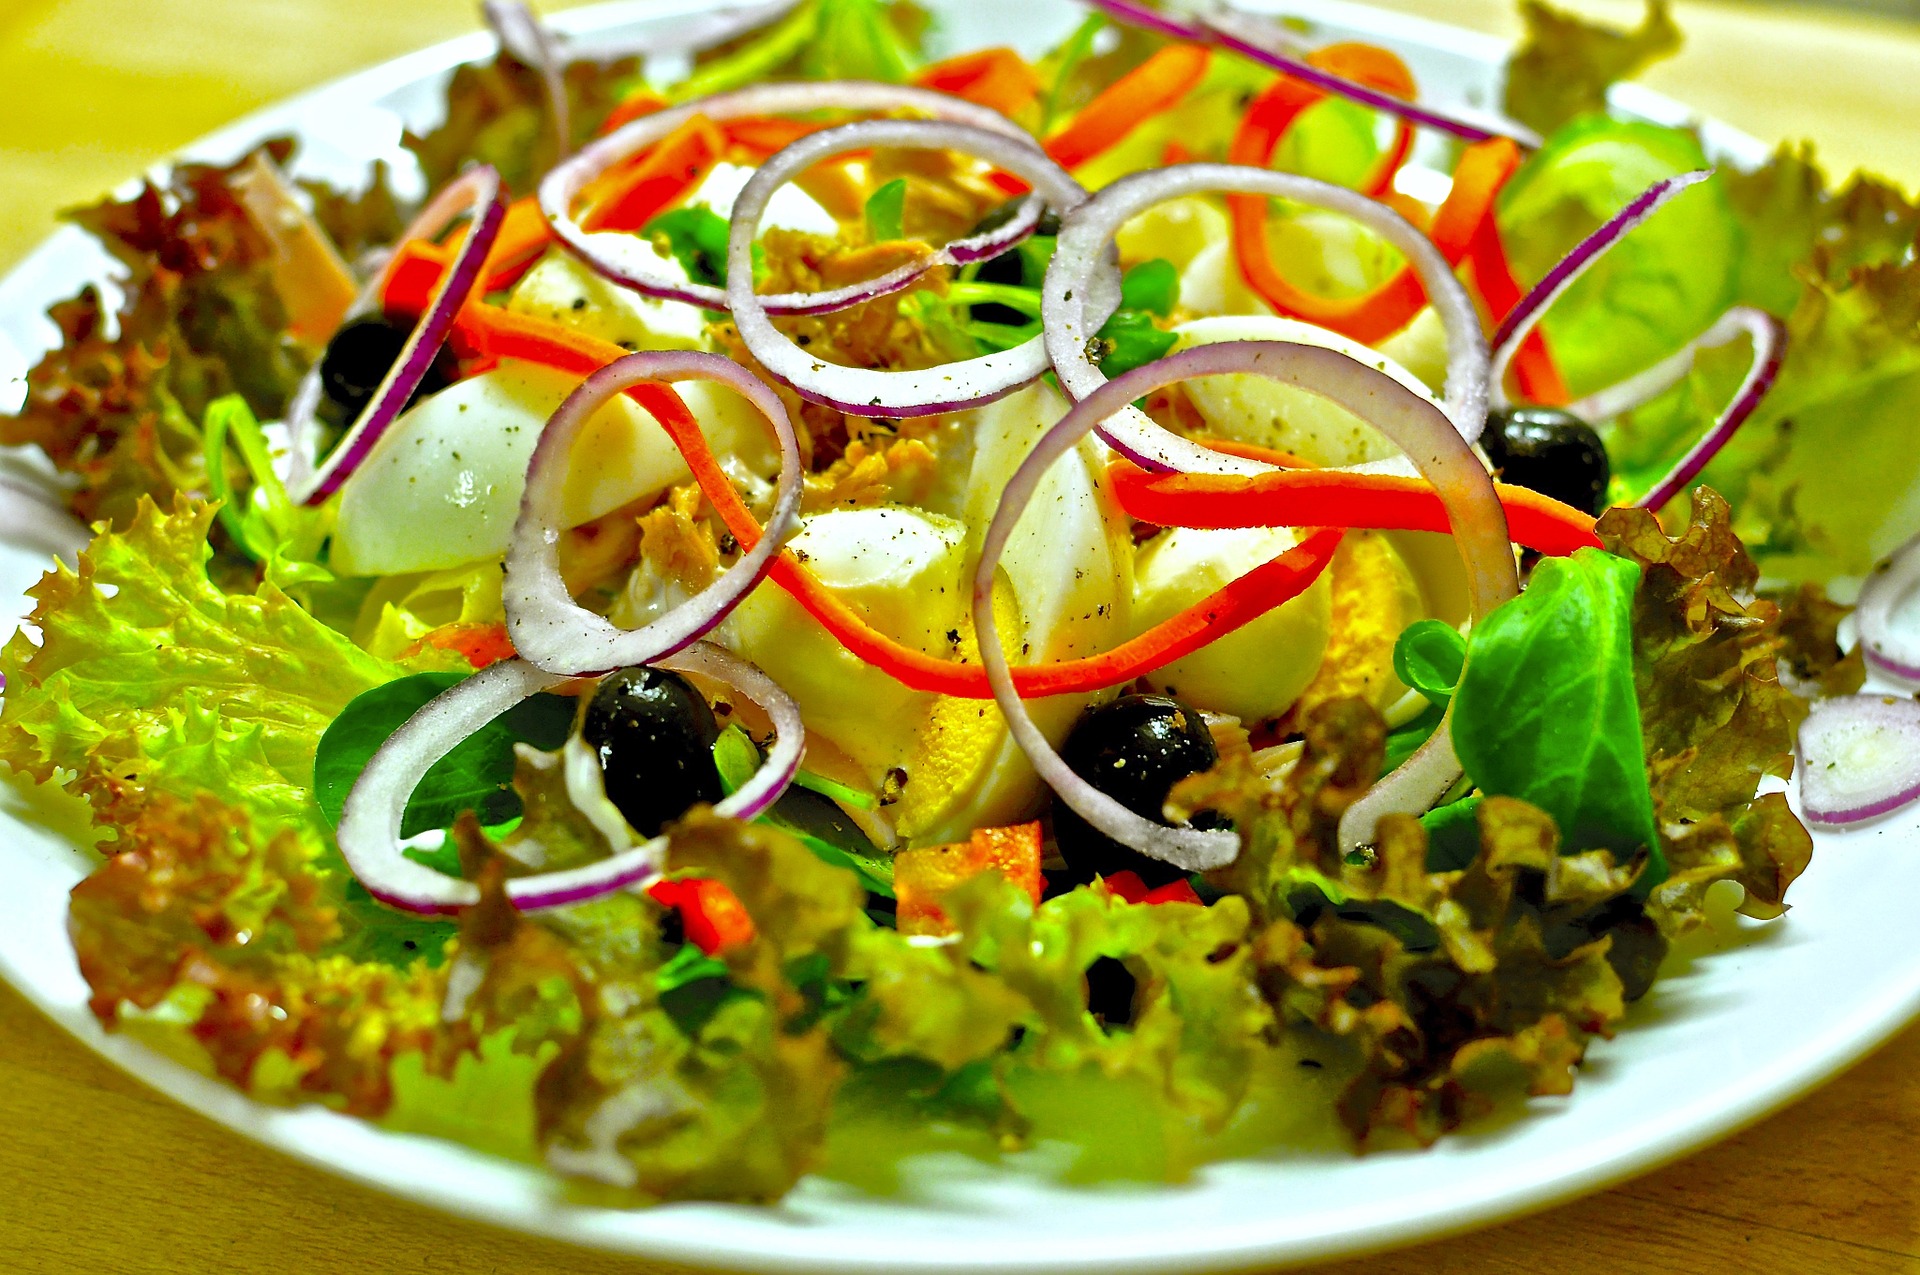 salad-1095649_1920.jpg